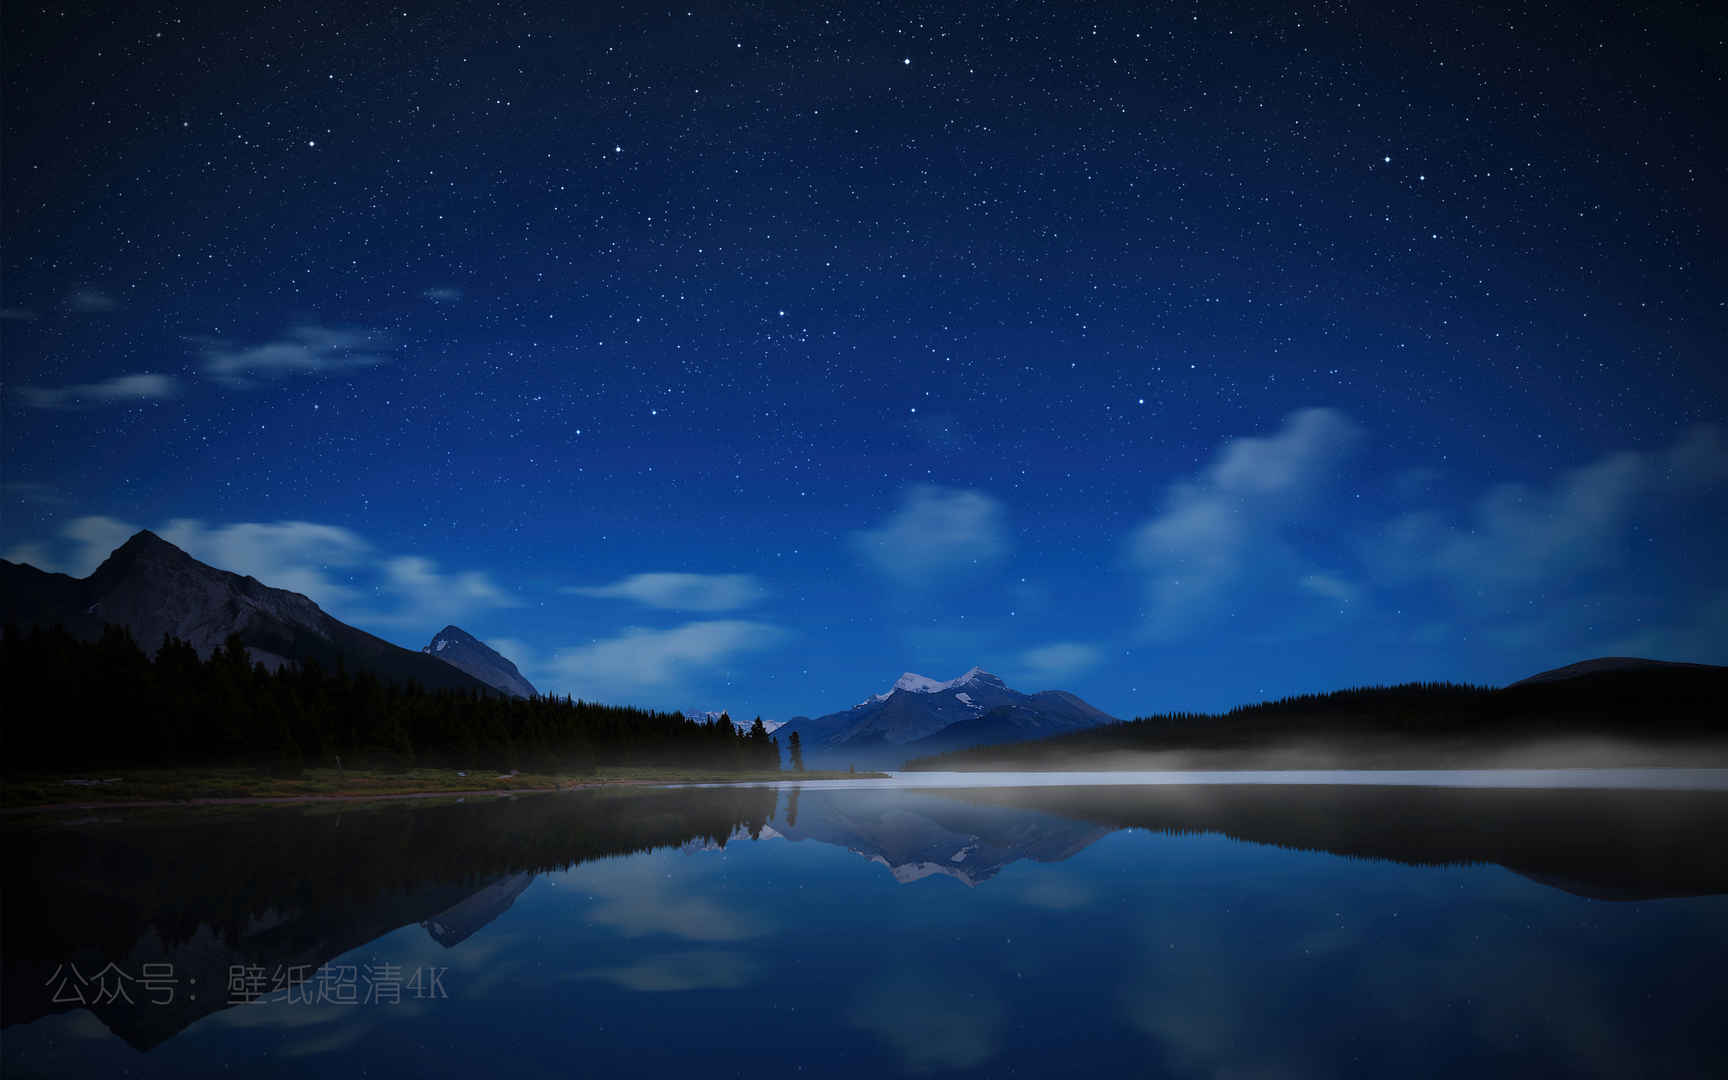 加拿大 贾斯珀国家公园 玛琳湖 星空壁纸-